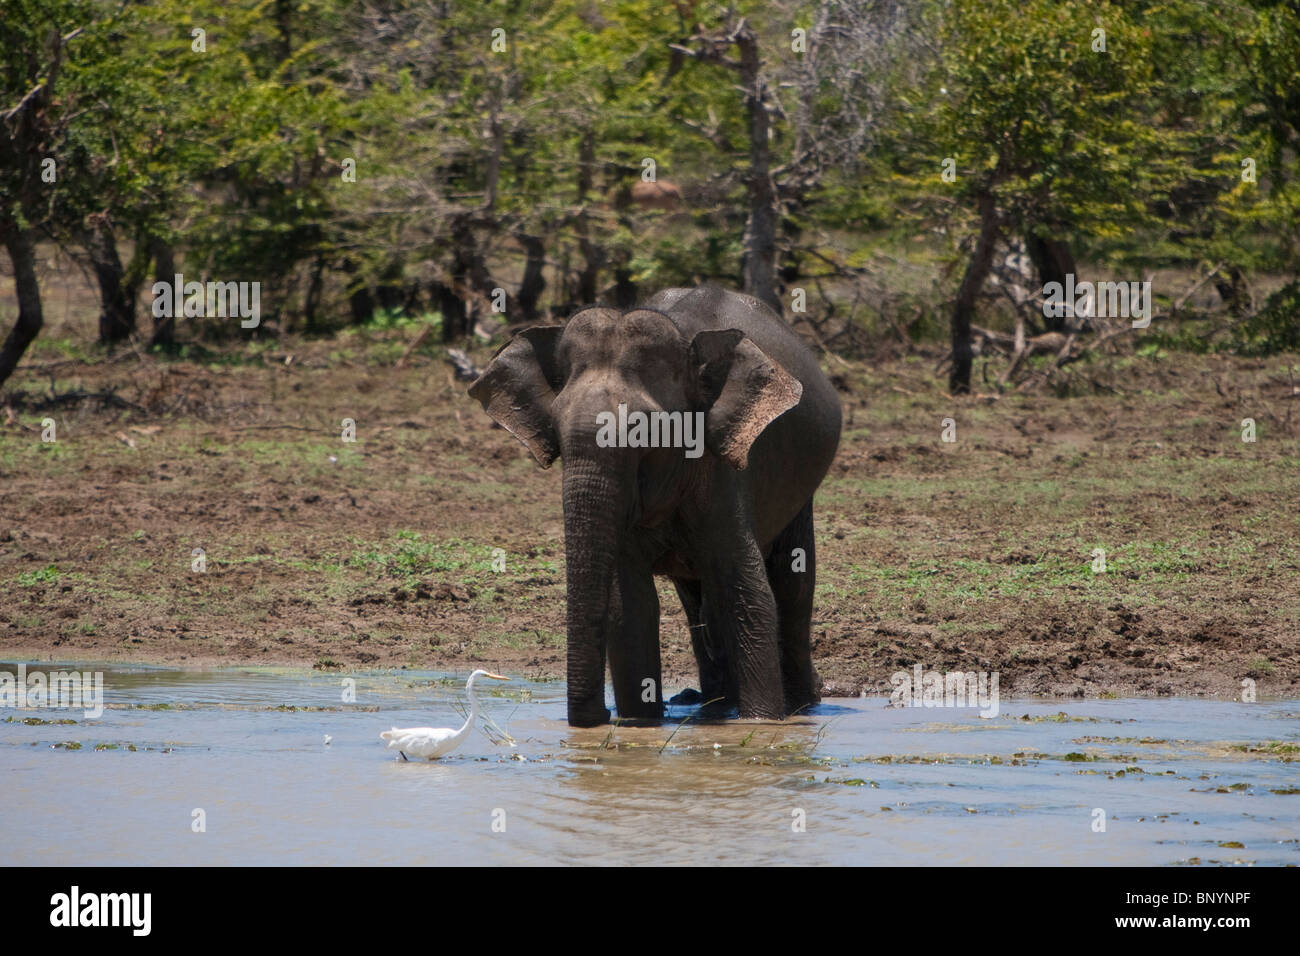 Elefante asiático, Elephas maximus, Indischer Elefante, Bull beber y bañarse en un abrevadero en el Parque Nacional de Yala, Sri Lanka Foto de stock